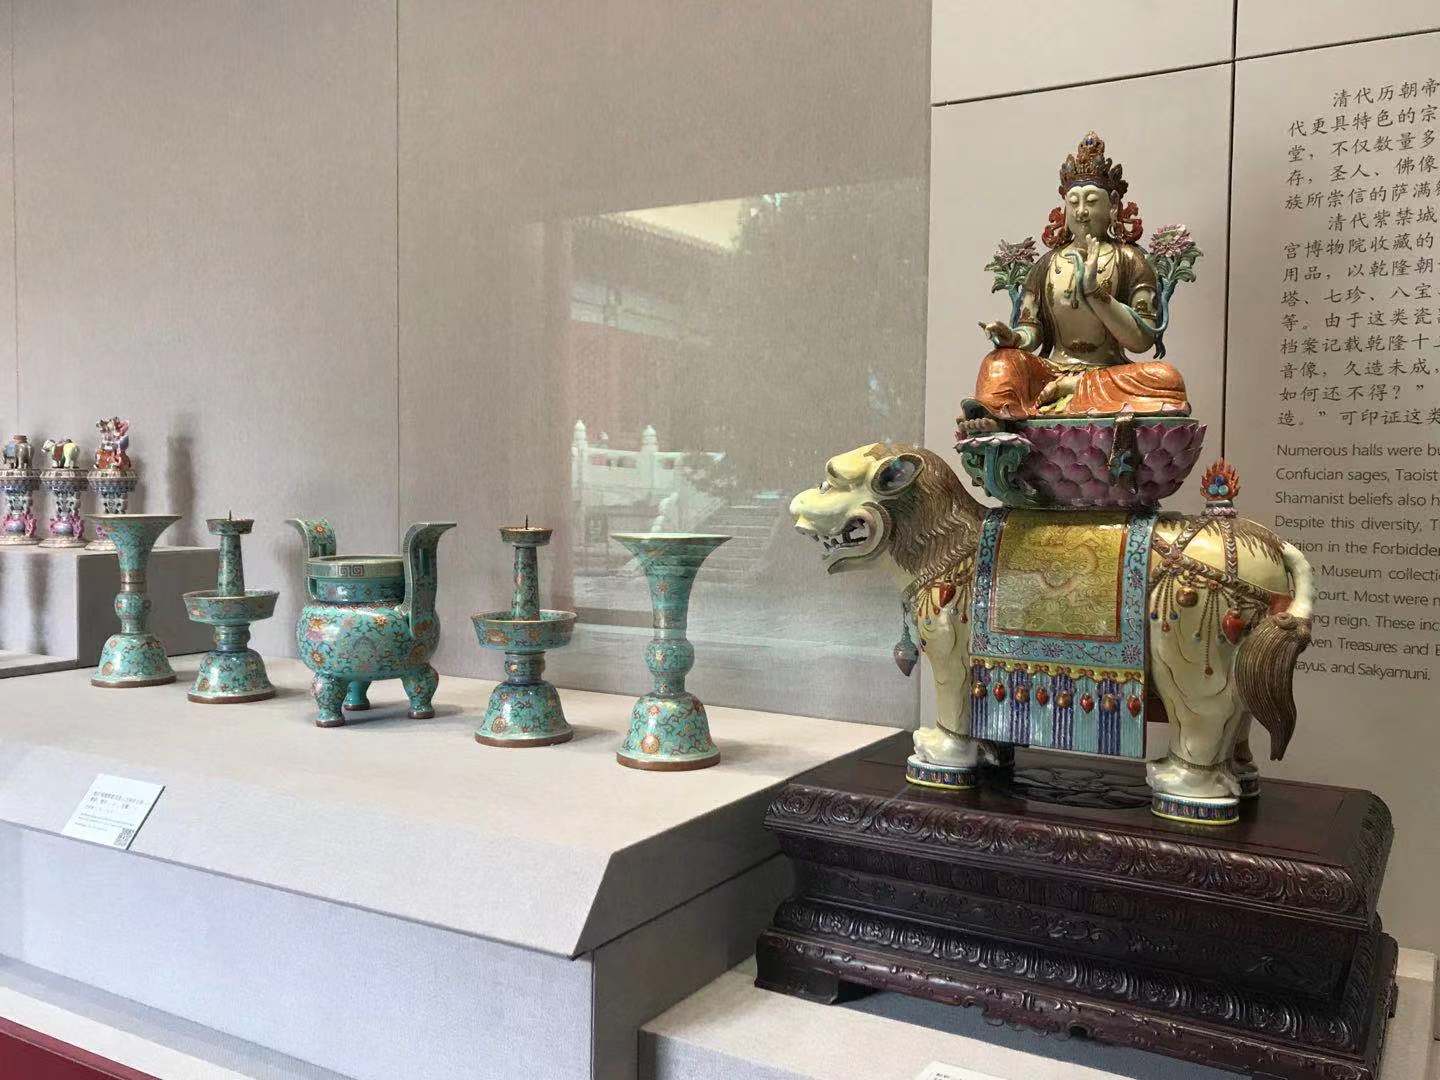 故宫武英殿陶瓷展图片